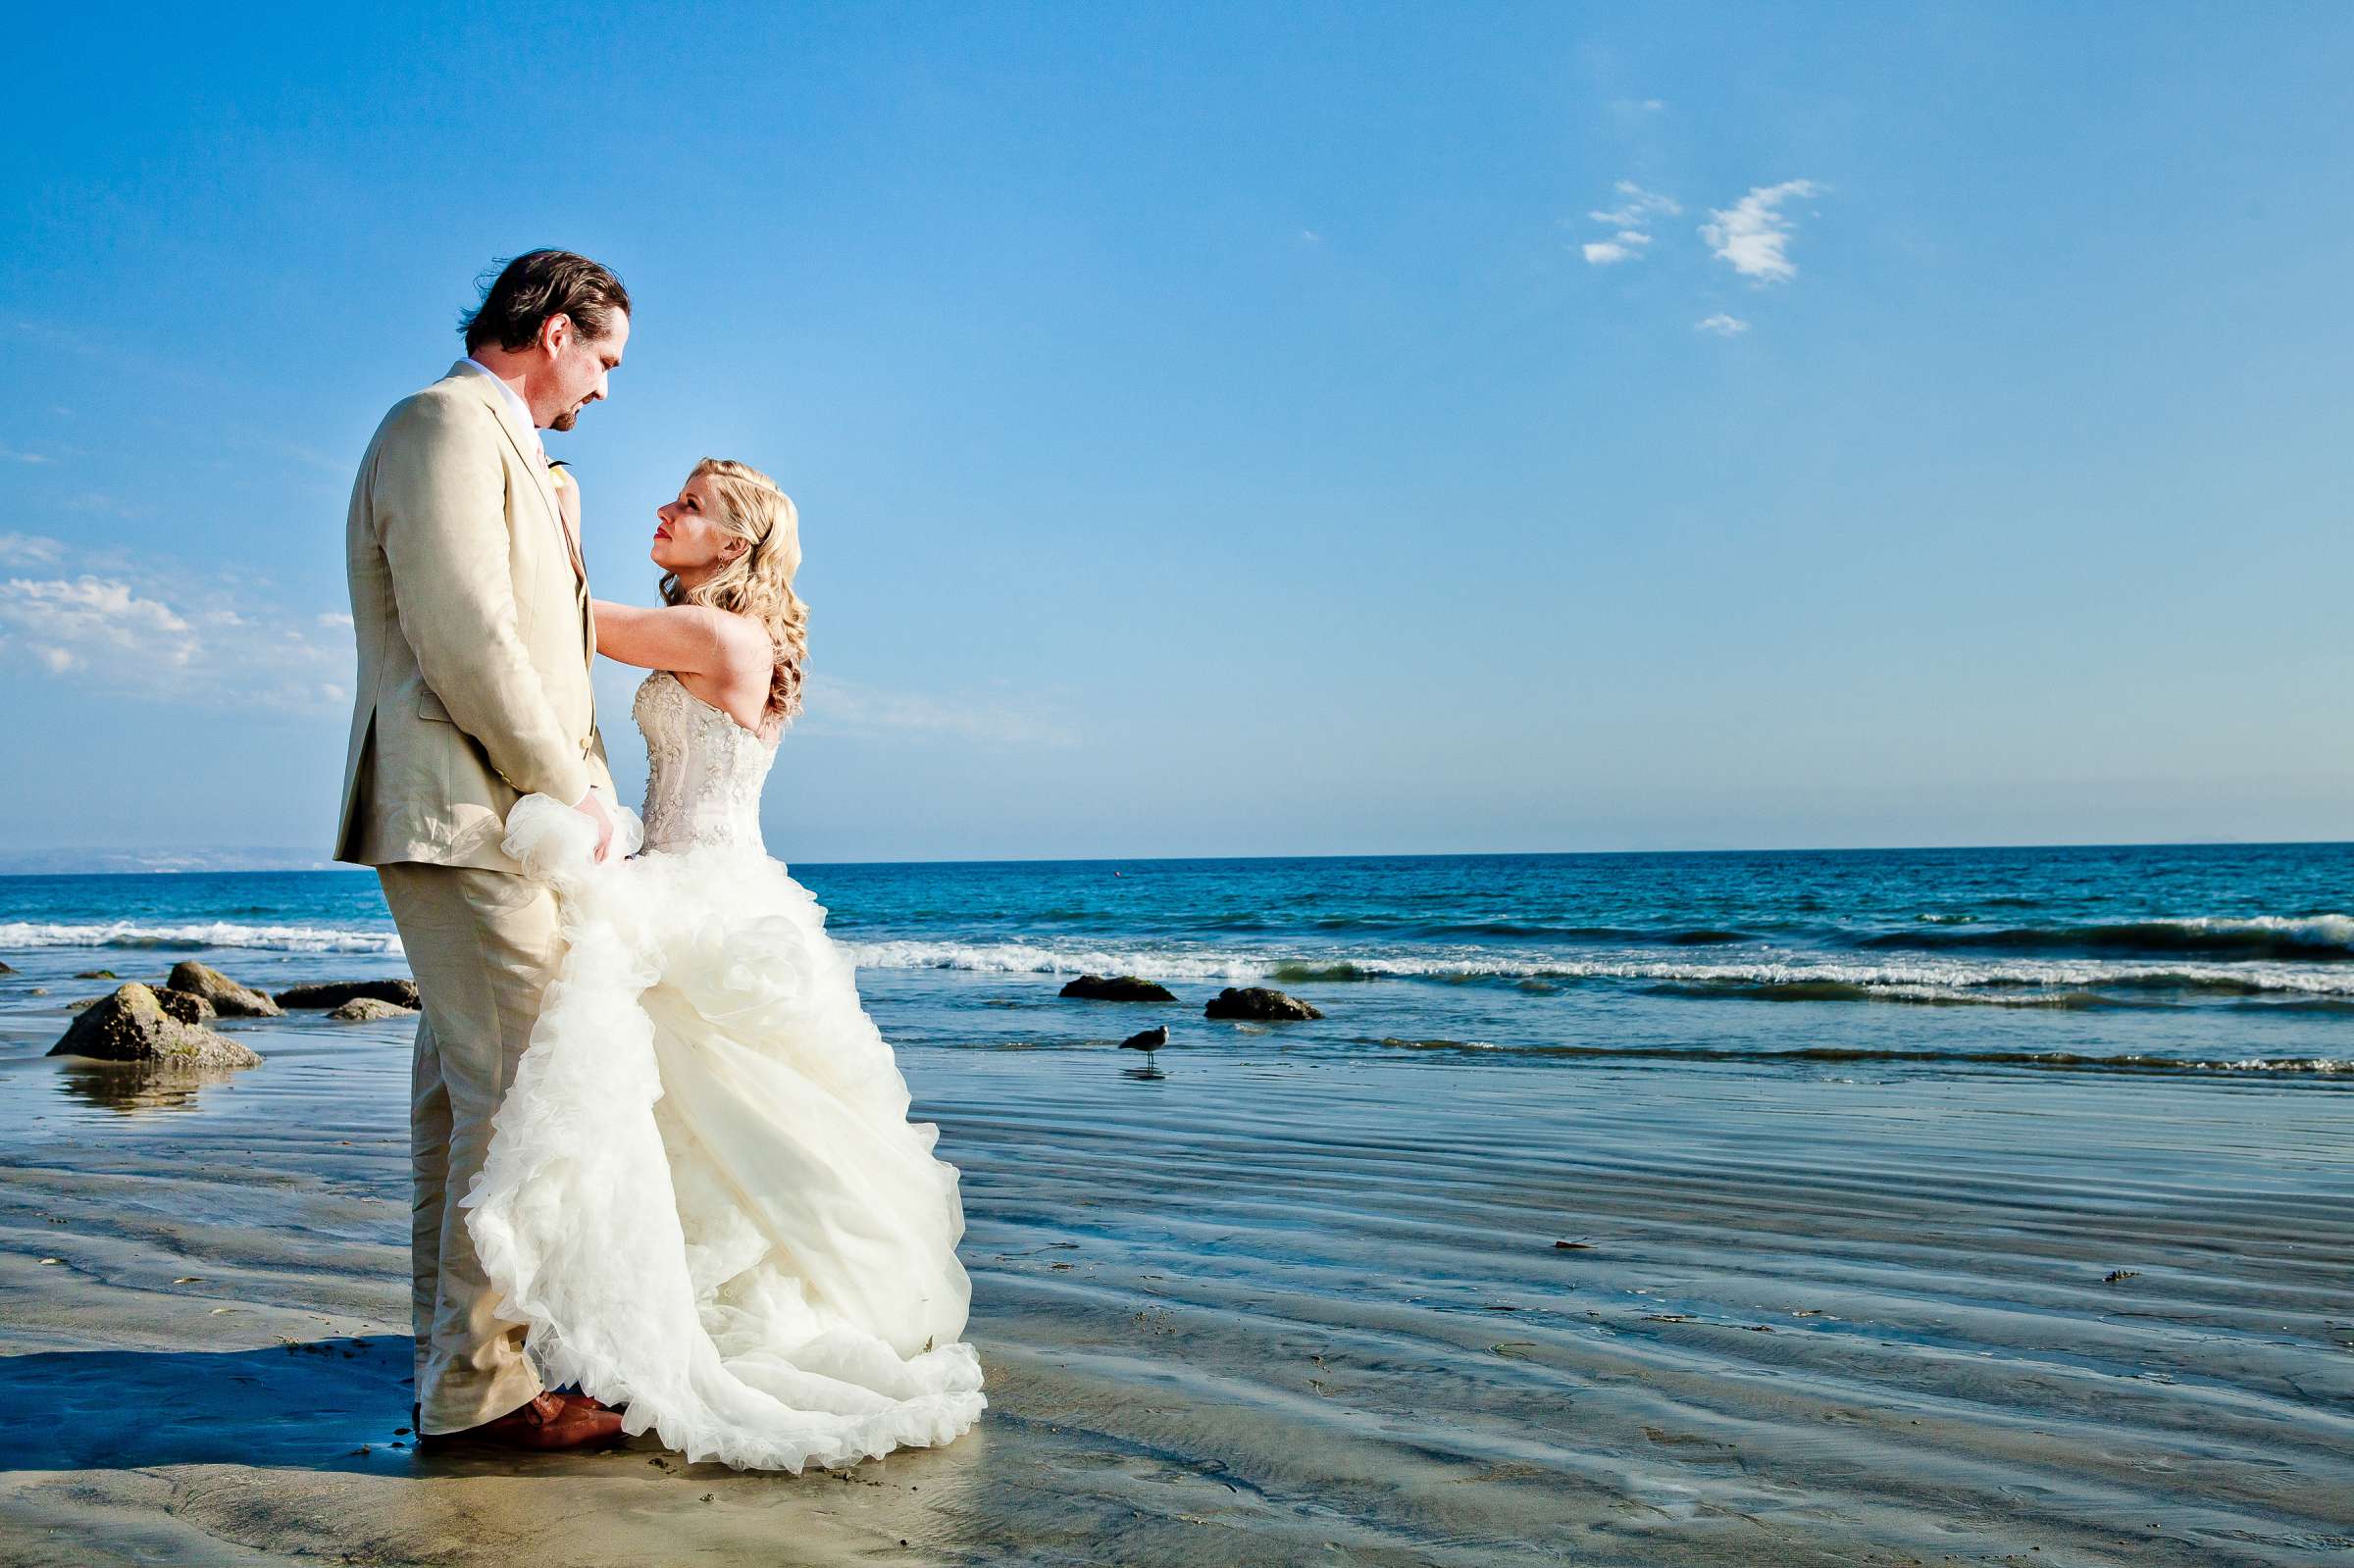 Hotel Del Coronado Wedding, Sarah and Tony Wedding Photo #323702 by True Photography